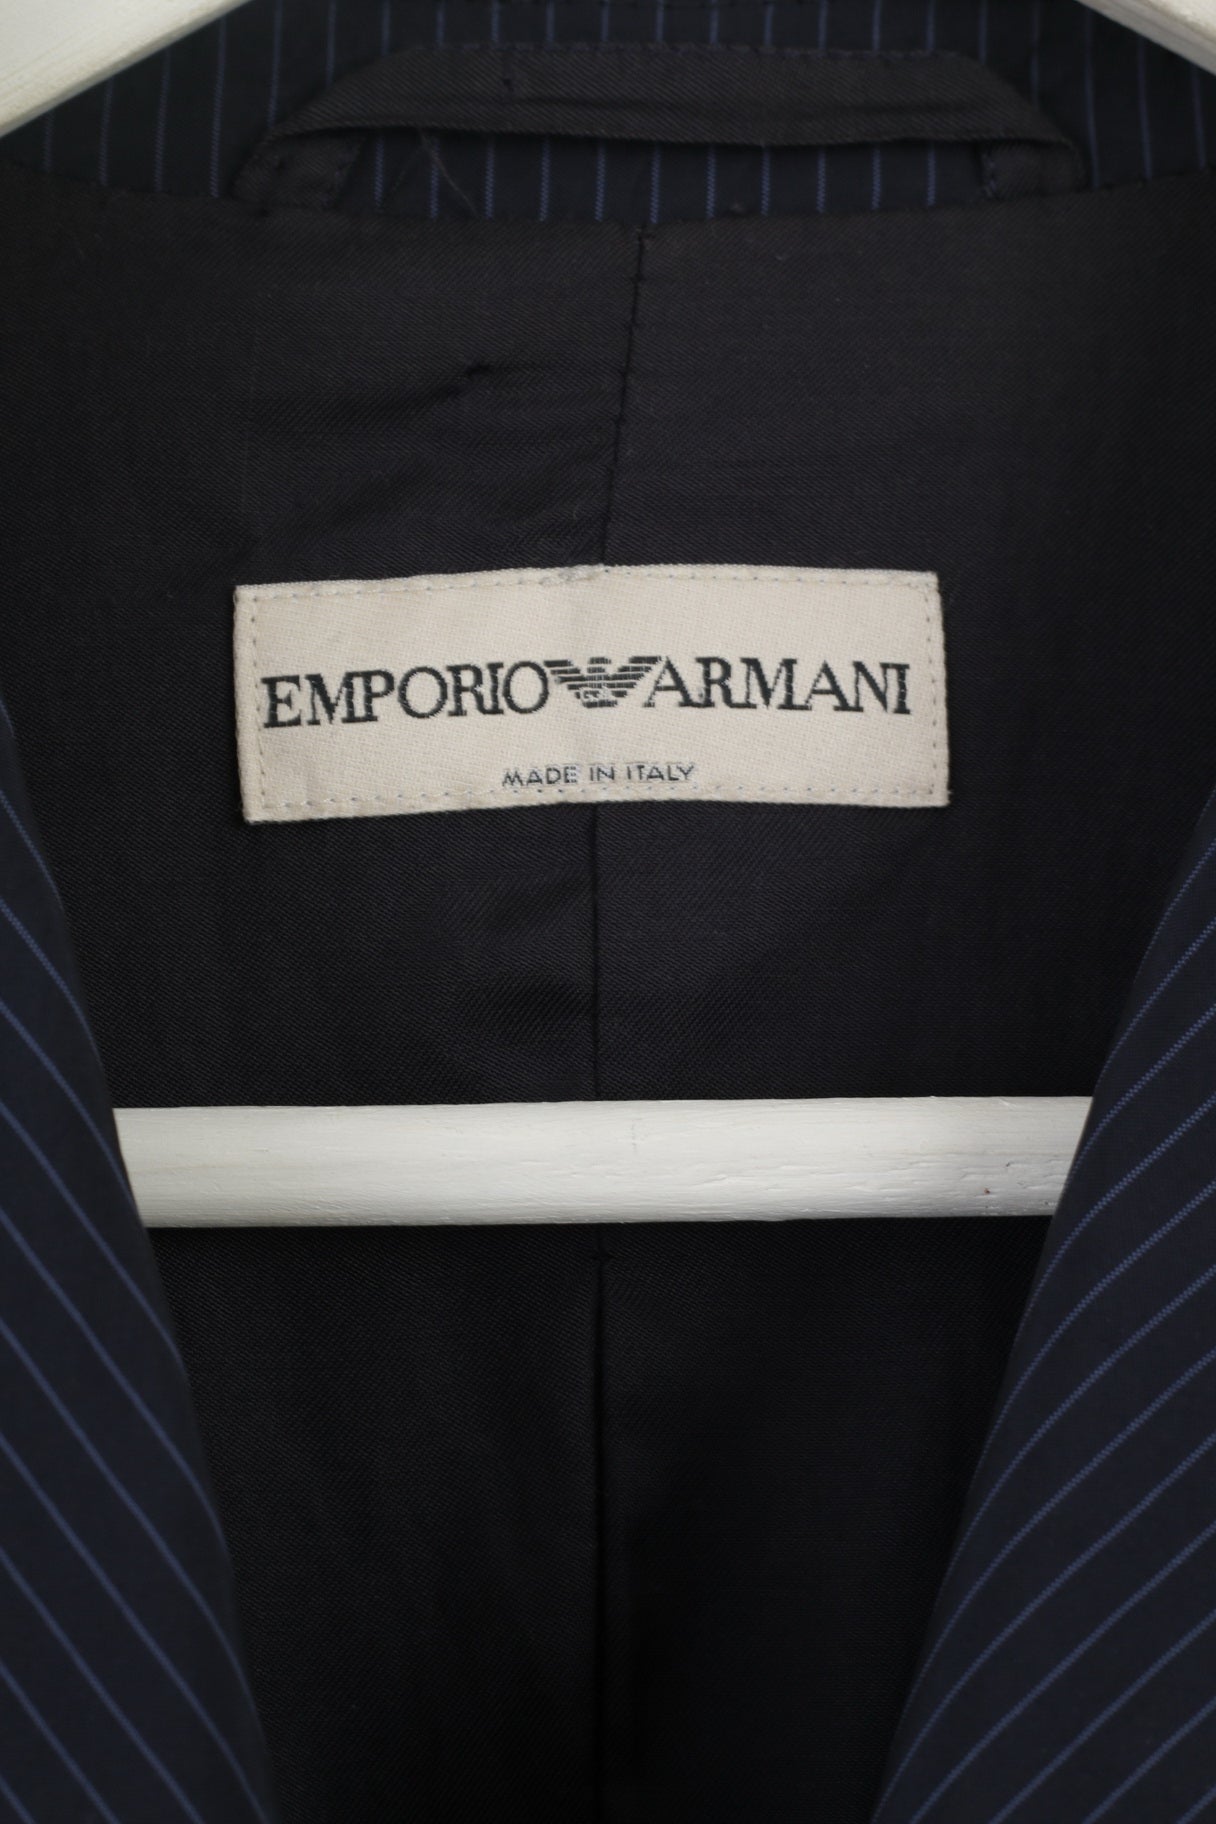 emporio armani made in